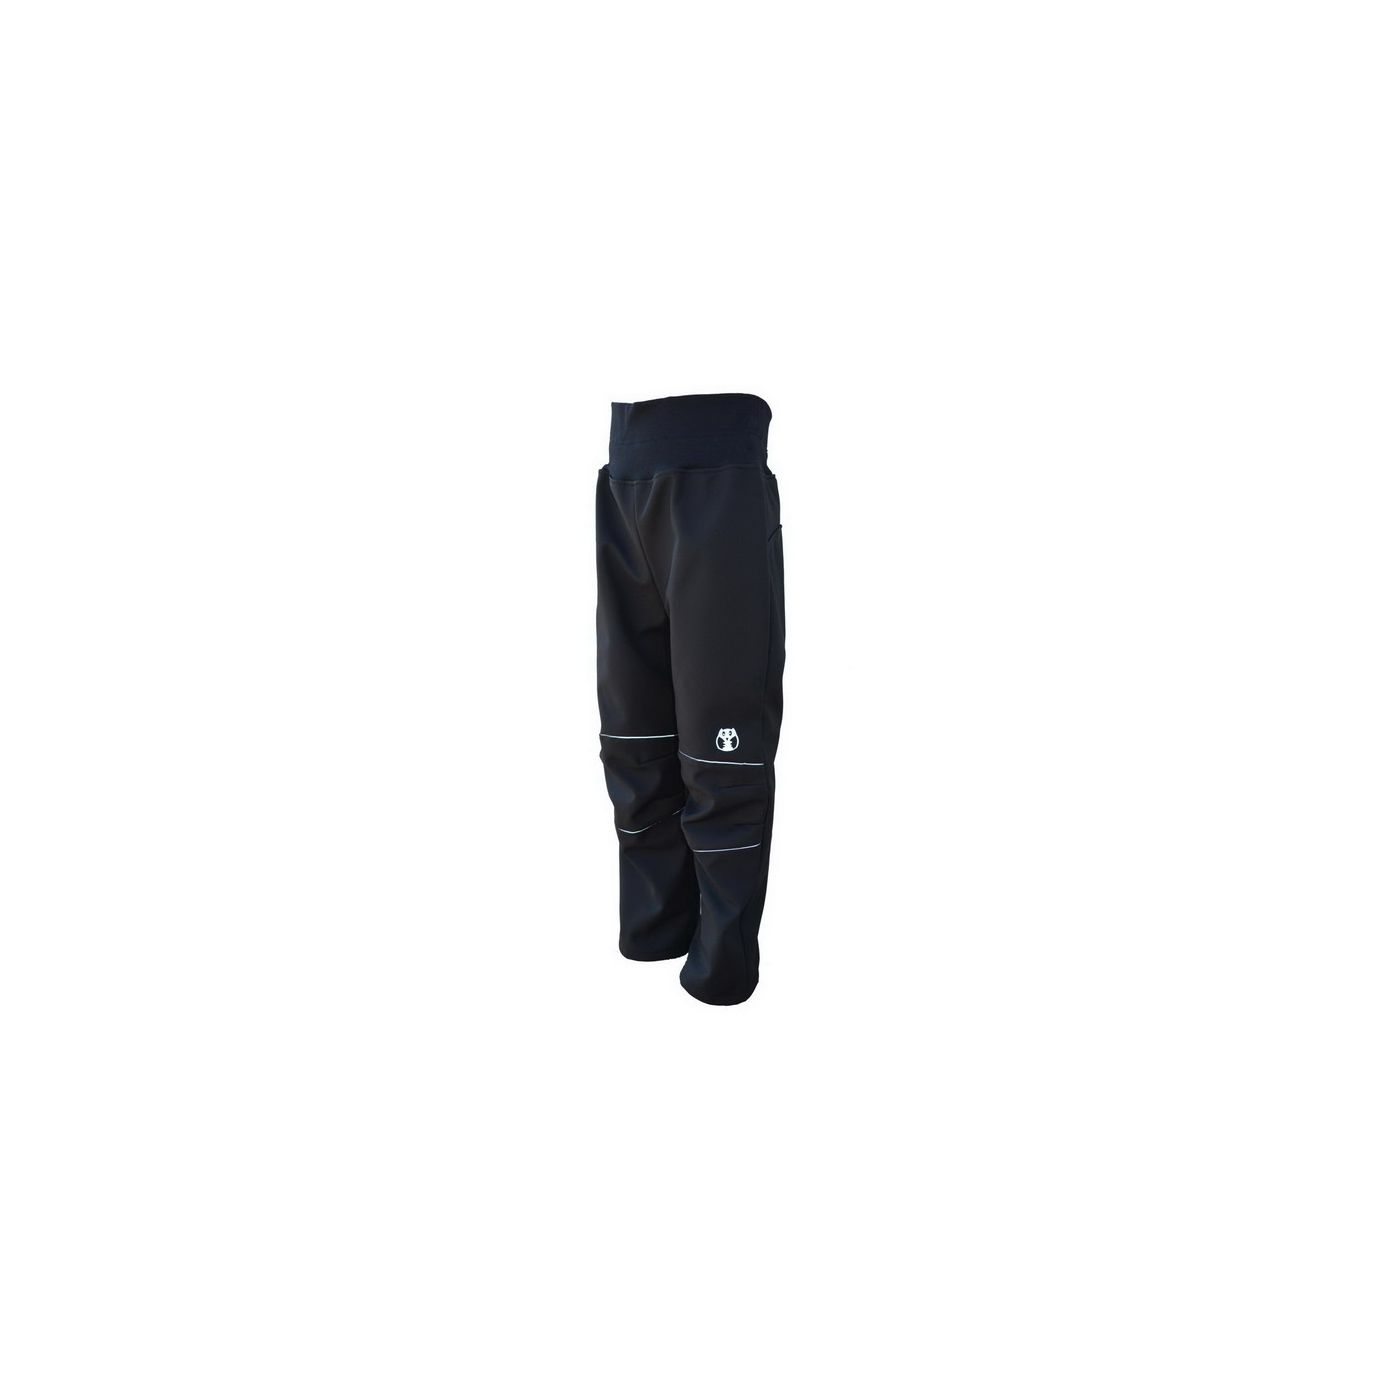 Softshellové kalhoty - černo-reflexní